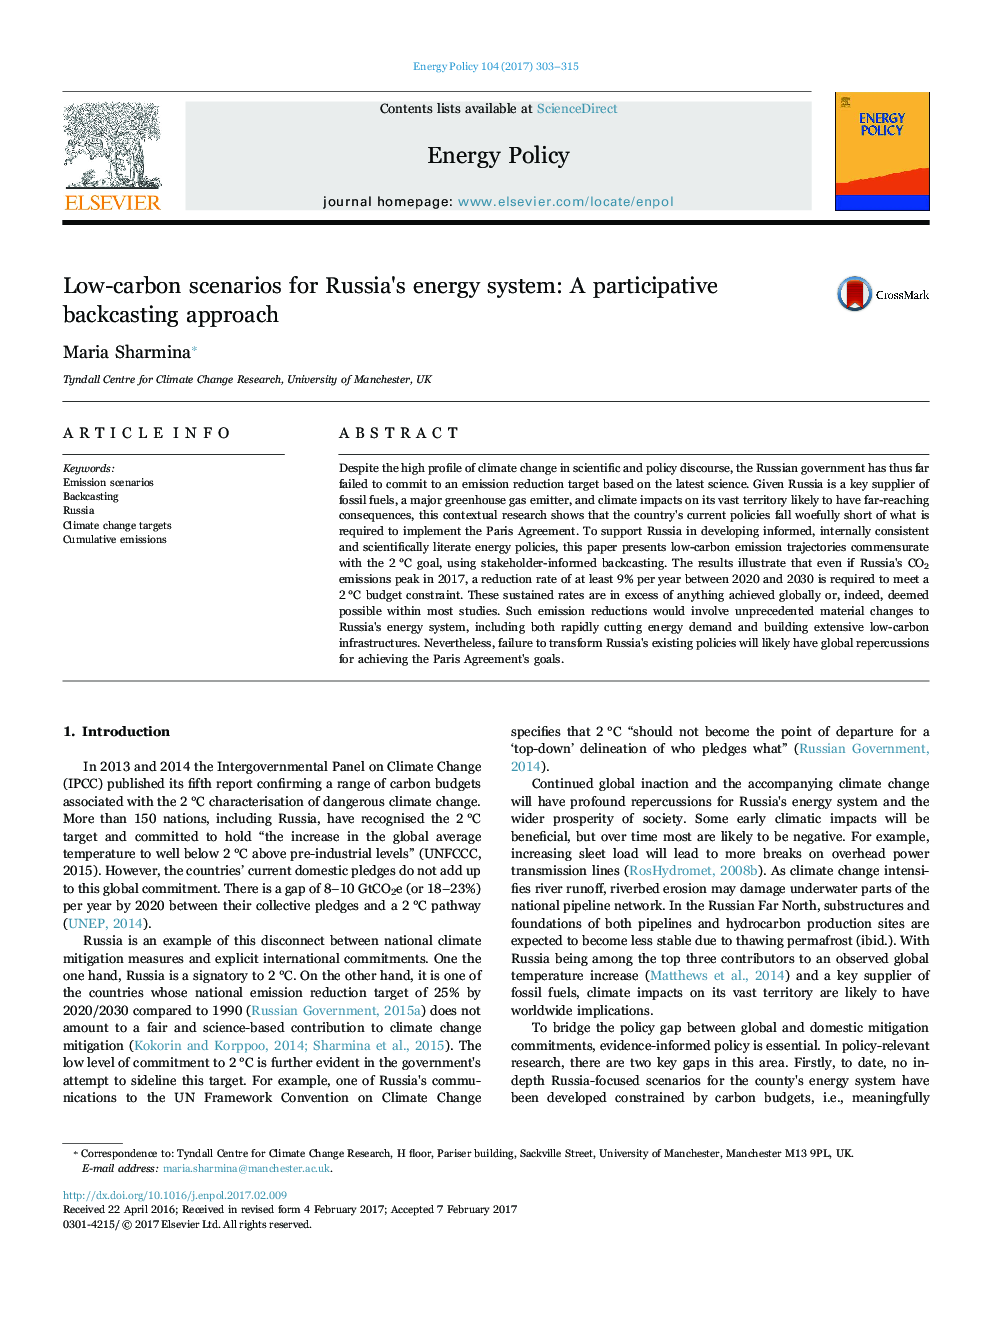 سناریوهای کم کربن برای سیستم انرژی روسیه: یک رویکرد پیشگیرانه مشارکتی 